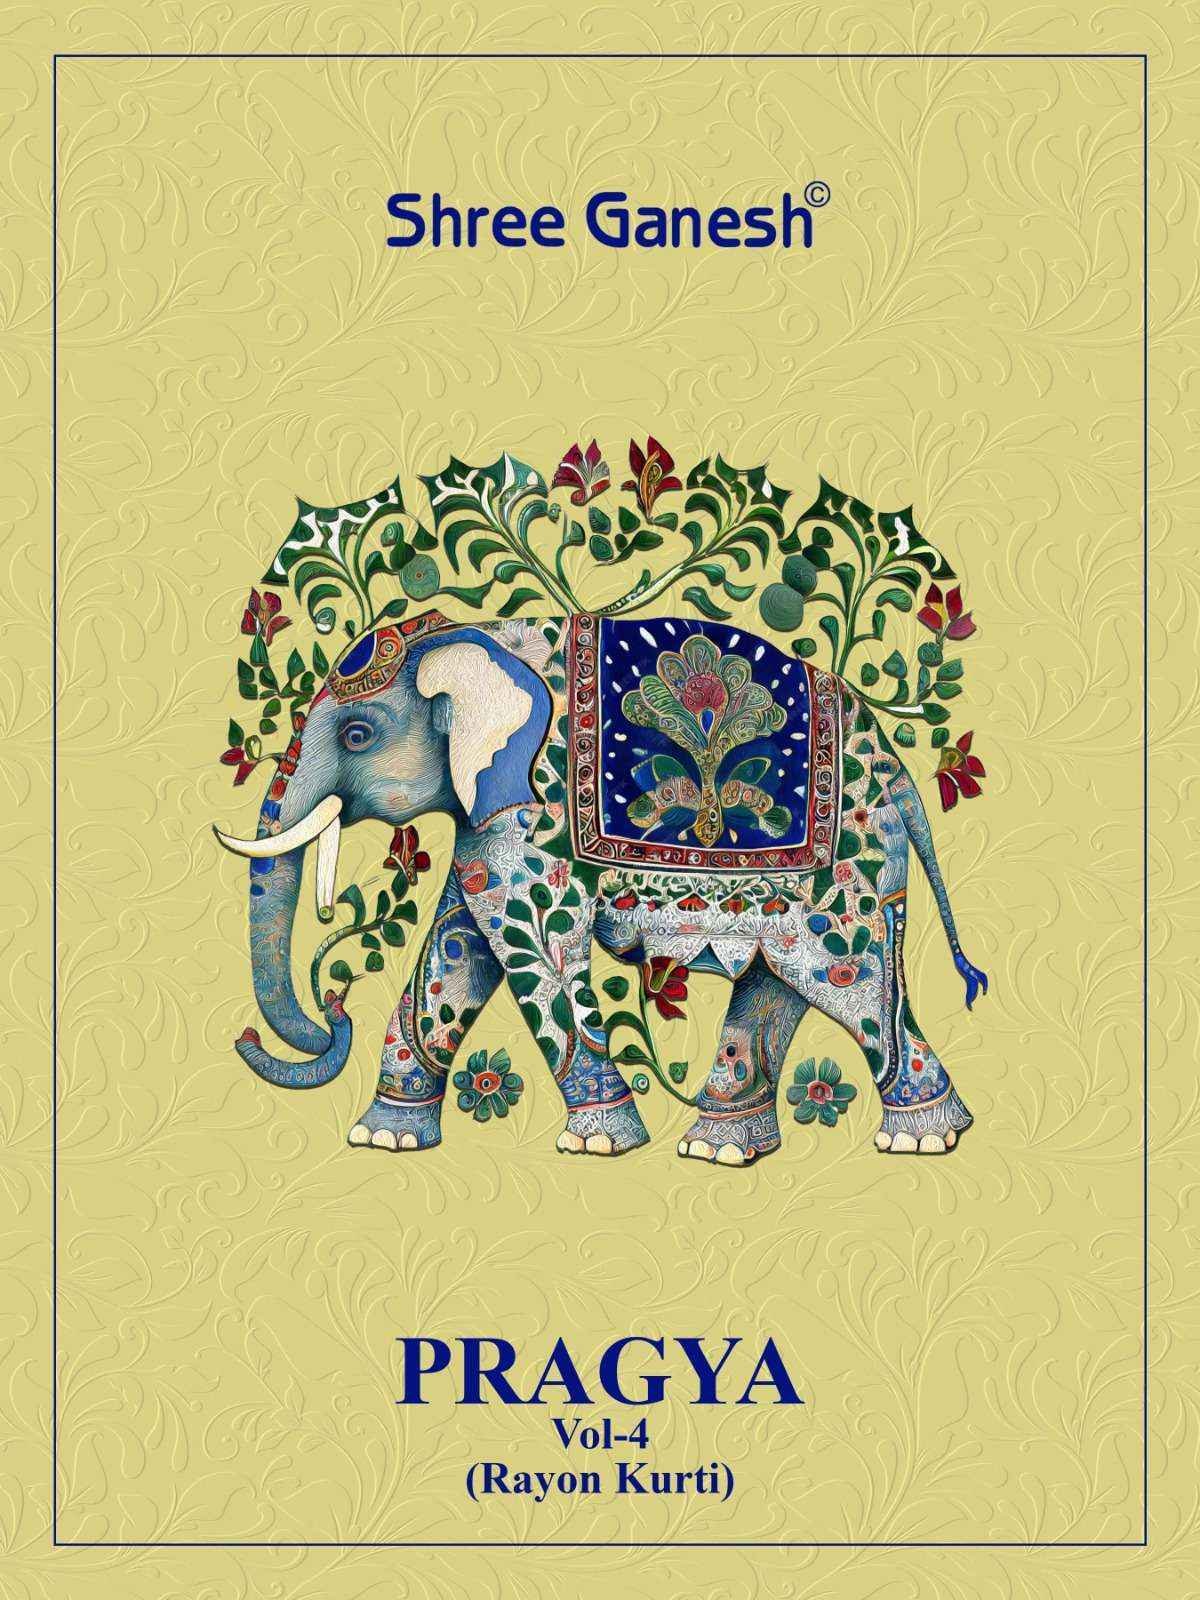 Shree Ganesh Pragya Vol 4 Rayon Kurti 15 pcs Catalogue